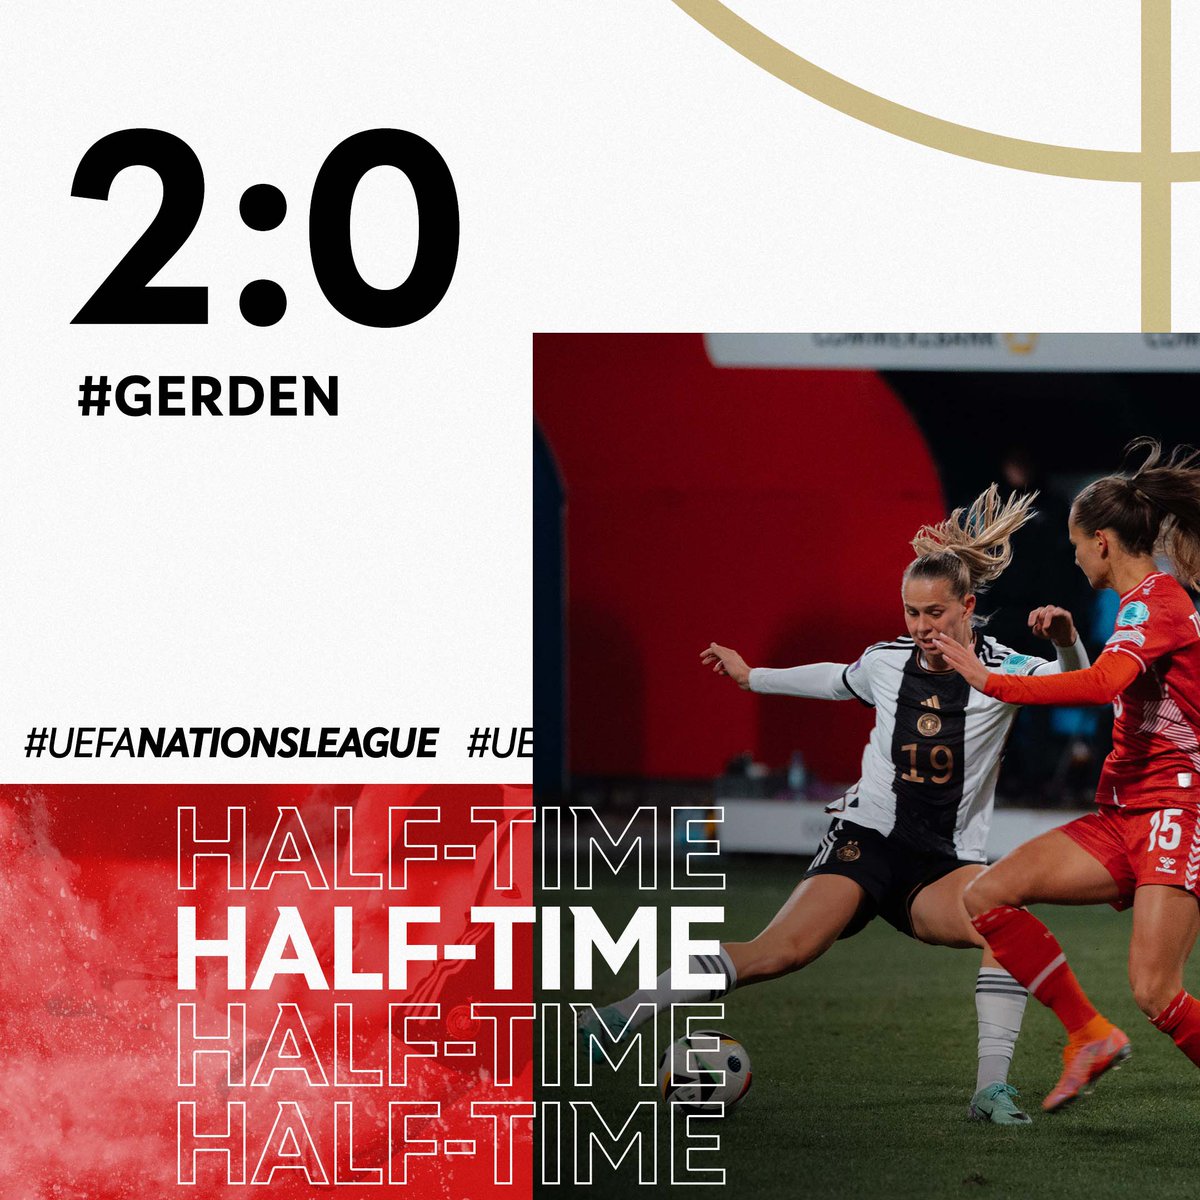 Two up at the half! 🙌 WIR #IMTEAM 🇩🇪 #GERDEN 📸 DFB/Sofieke van Bilsen